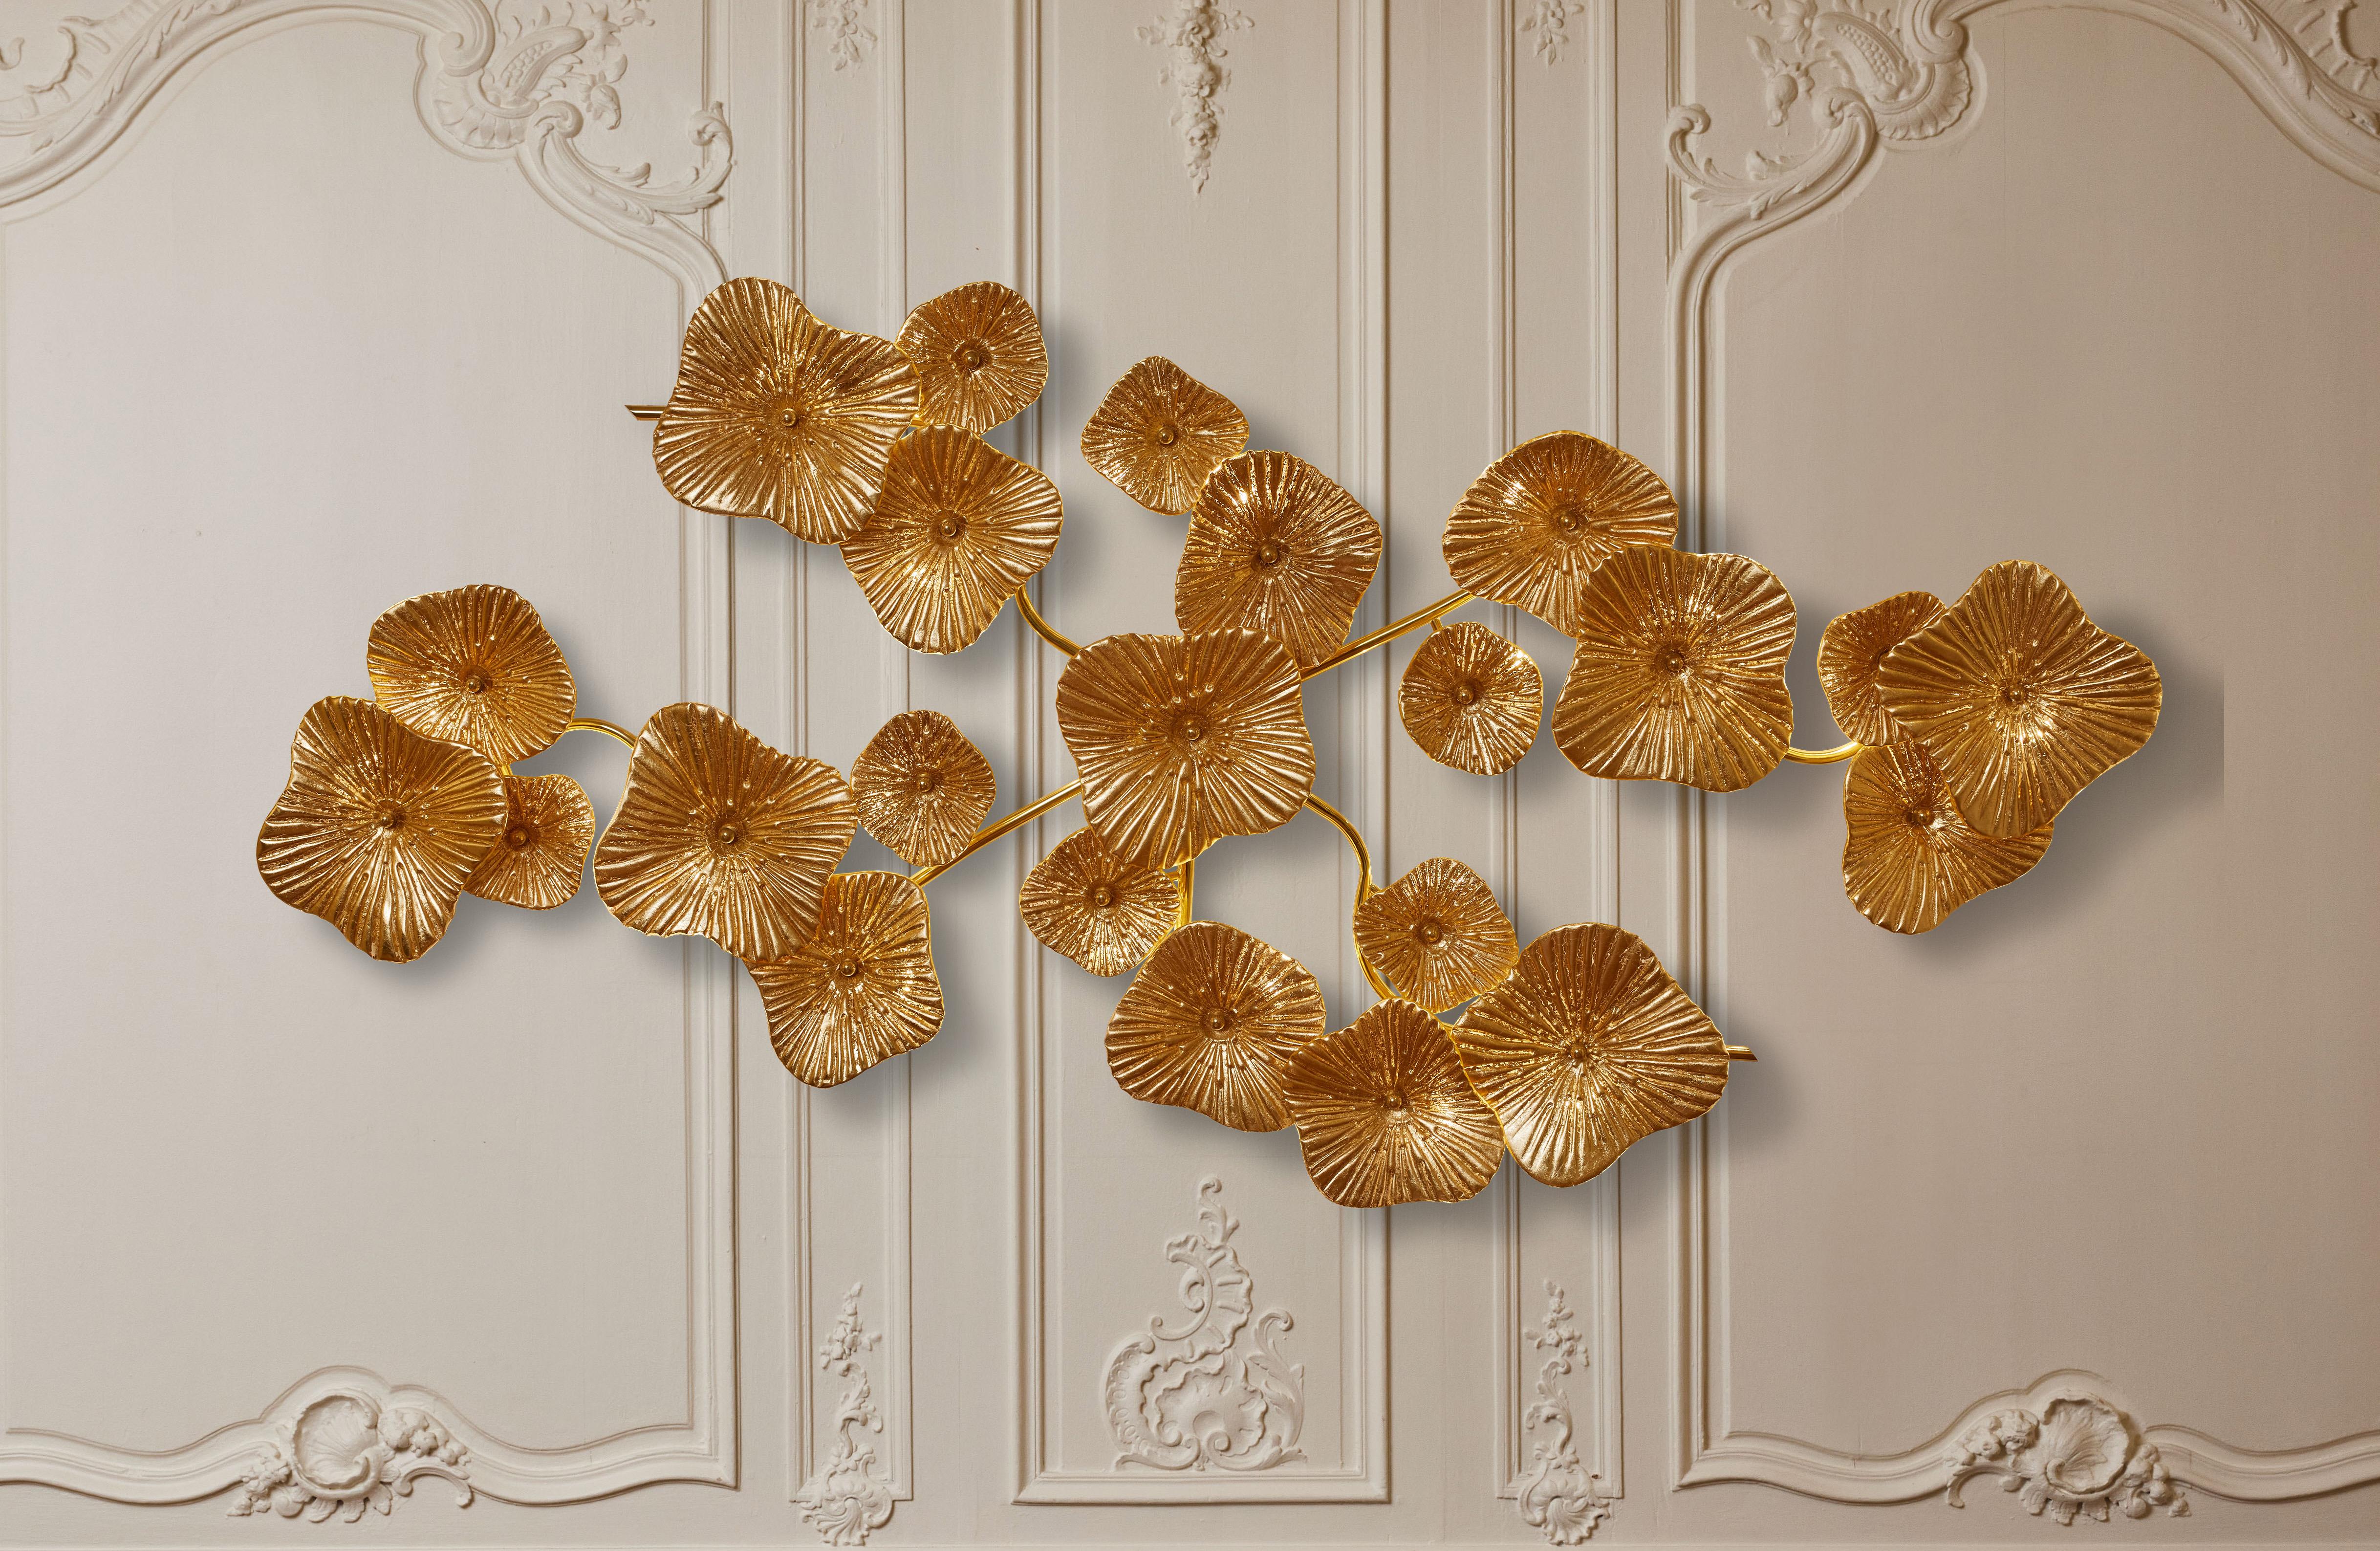 Lange Leuchte aus Messing mit Blumen aus vergoldetem Murano-Glas mit Blattgold.
Gestaltung durch das Studio Glustin.
Italien, 2023.